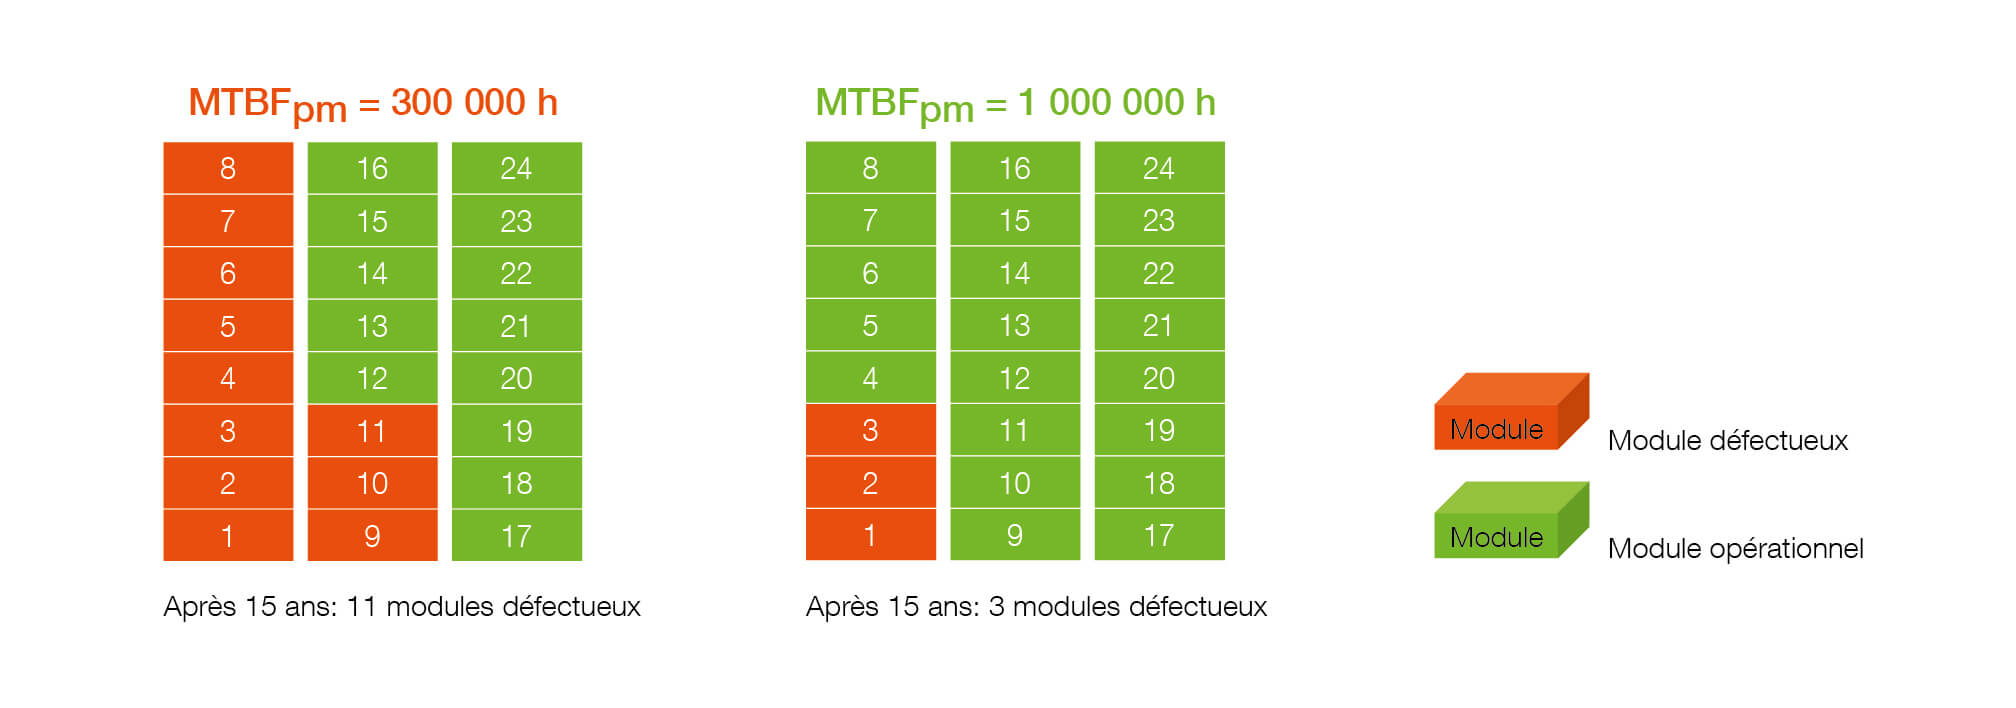 Tableau représentant l'estimation statistique du nombre de pannes de modules de puissance en 15 ans dans un système à 24 modules